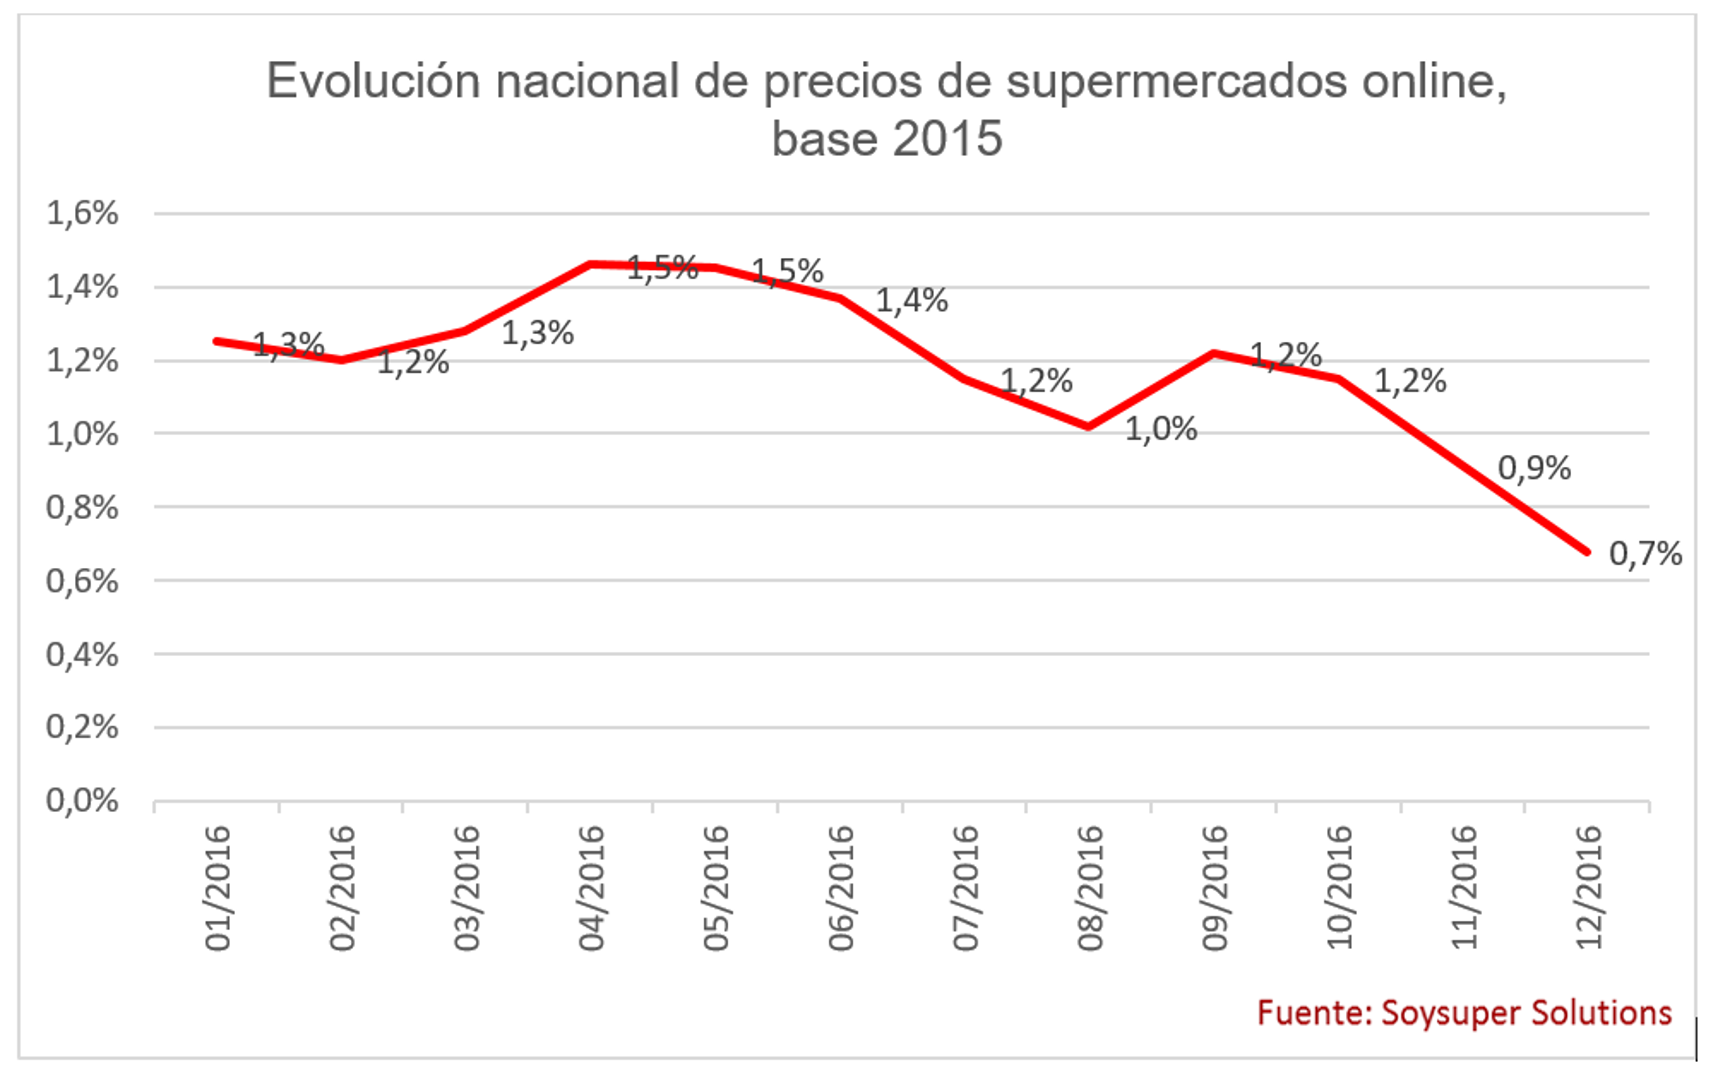 Los precios en los supermercados online en España suben un 0,7% en 2016